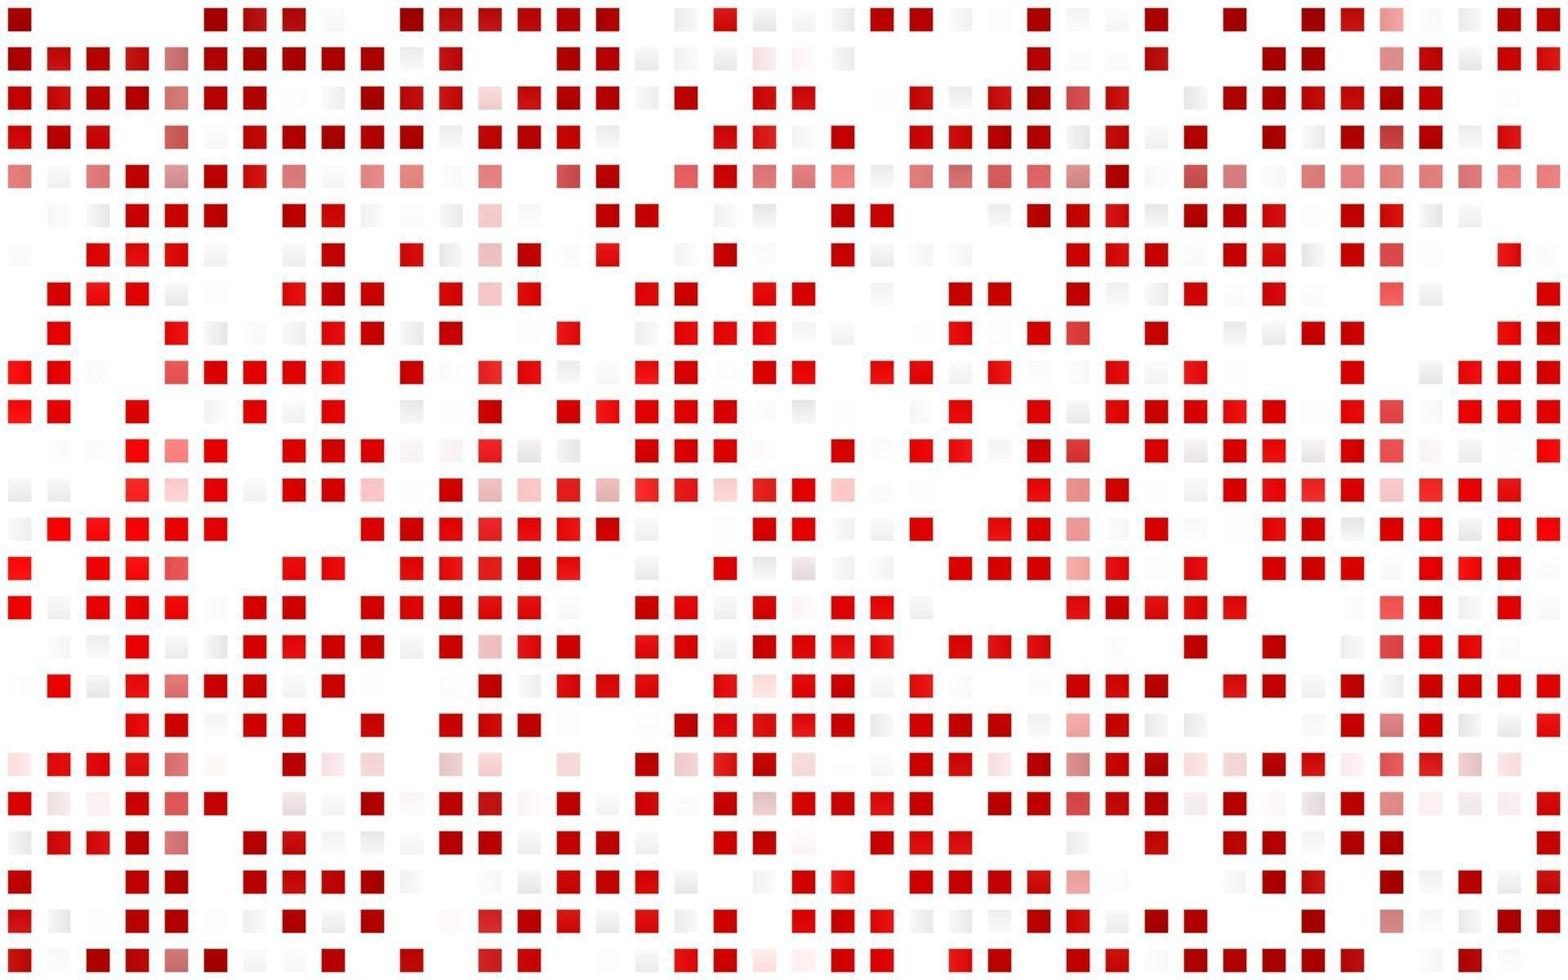 sfondo senza soluzione di continuità vettoriale rosso chiaro con rettangoli, quadrati.